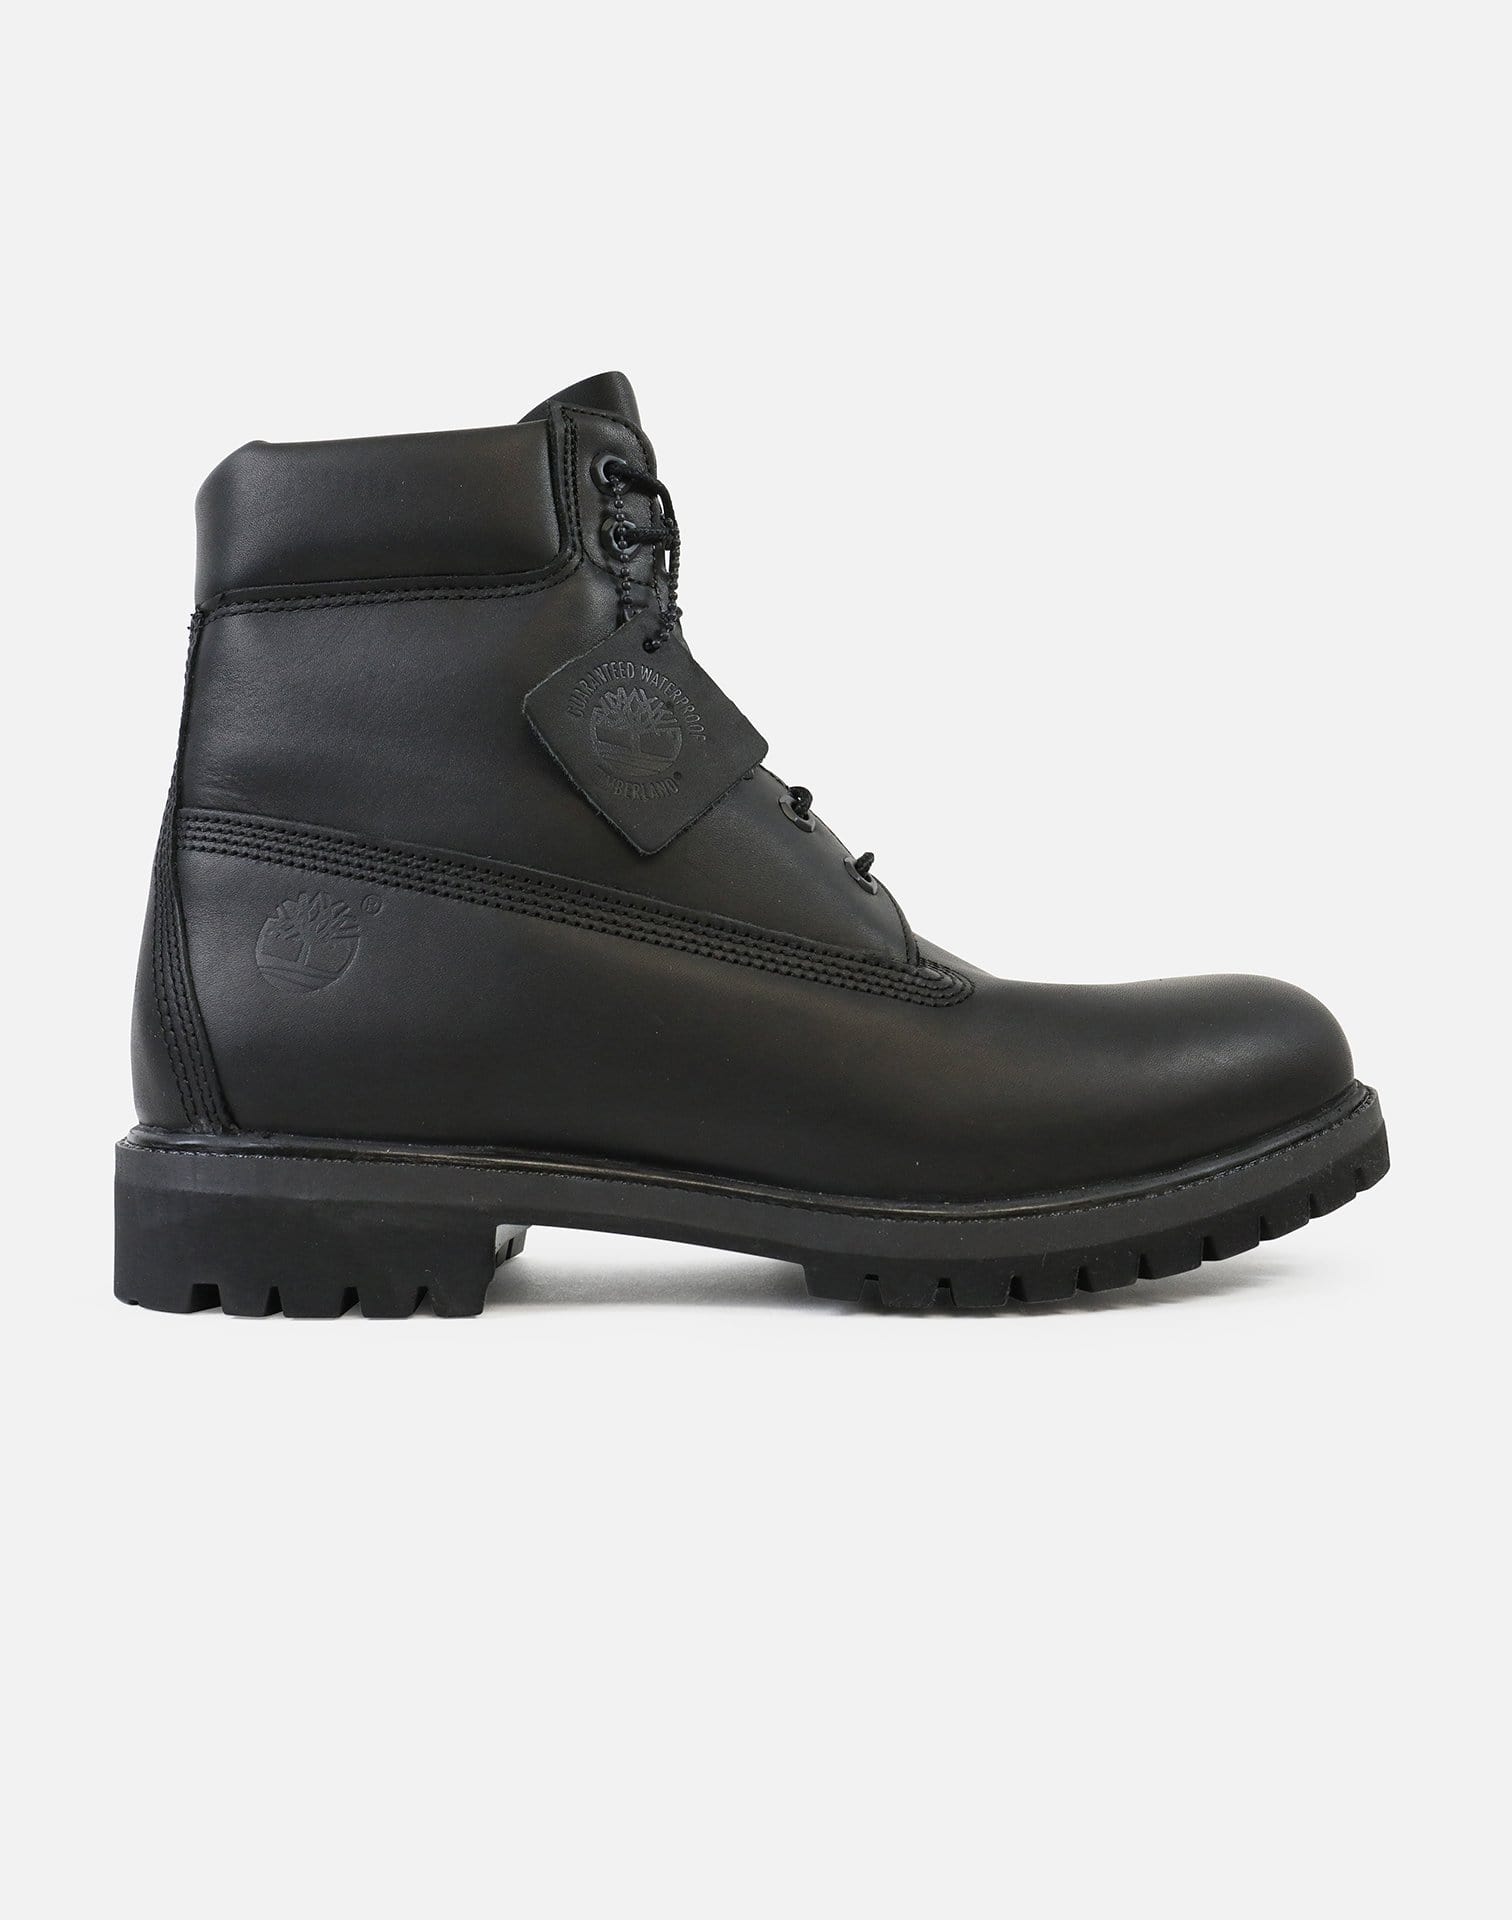 Timberland 6" Premium Premium Leather Boots